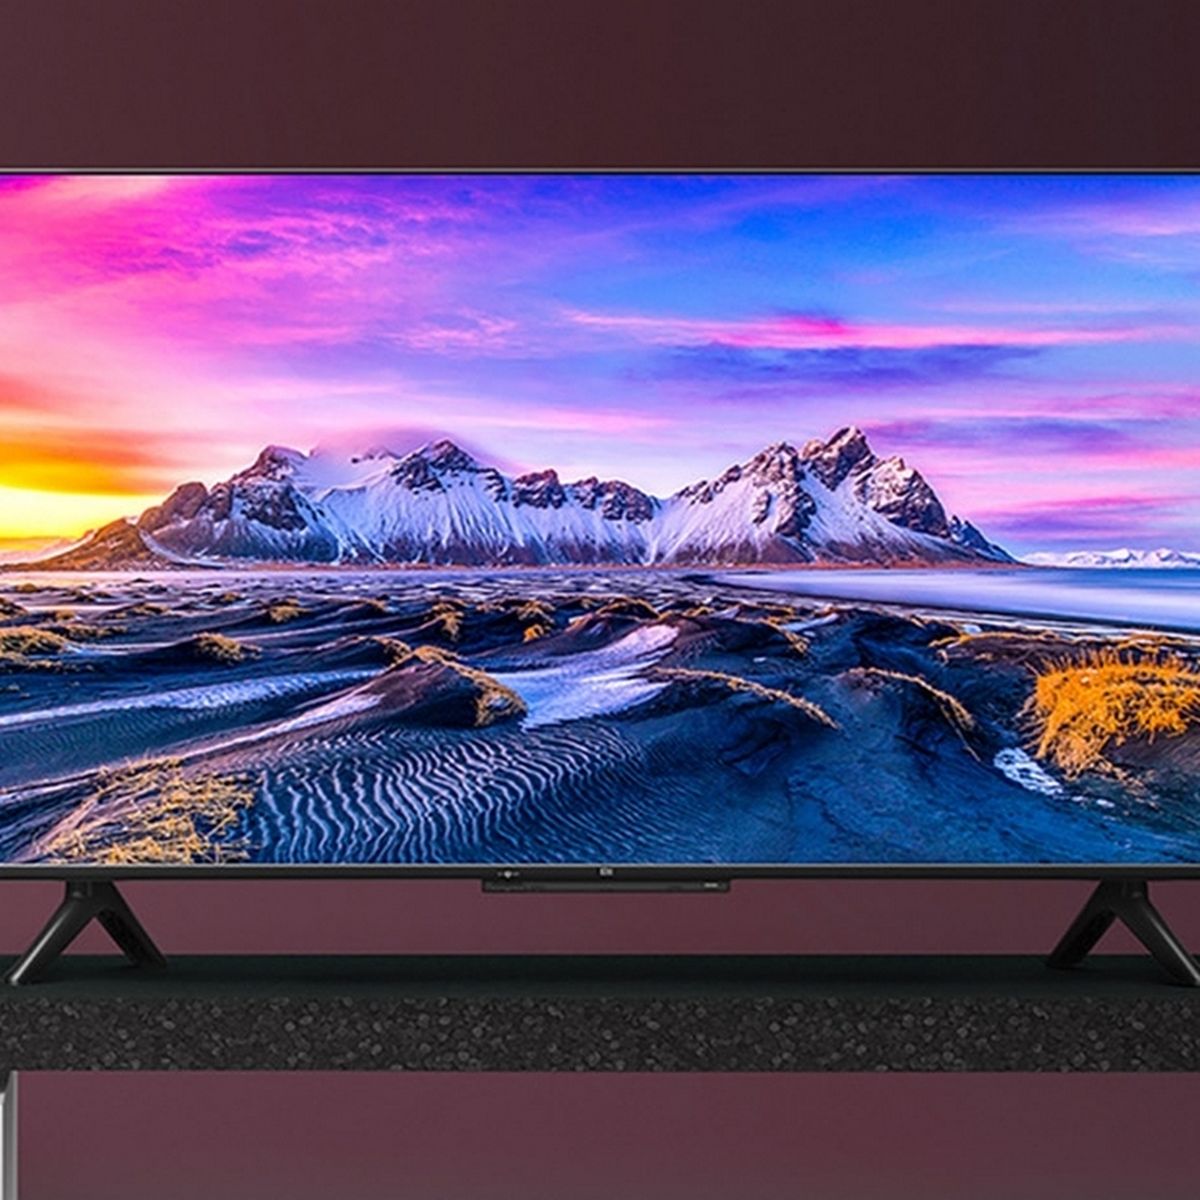 El televisor Xiaomi Mi TV P1 de 43 pulgadas con resolución 4K y